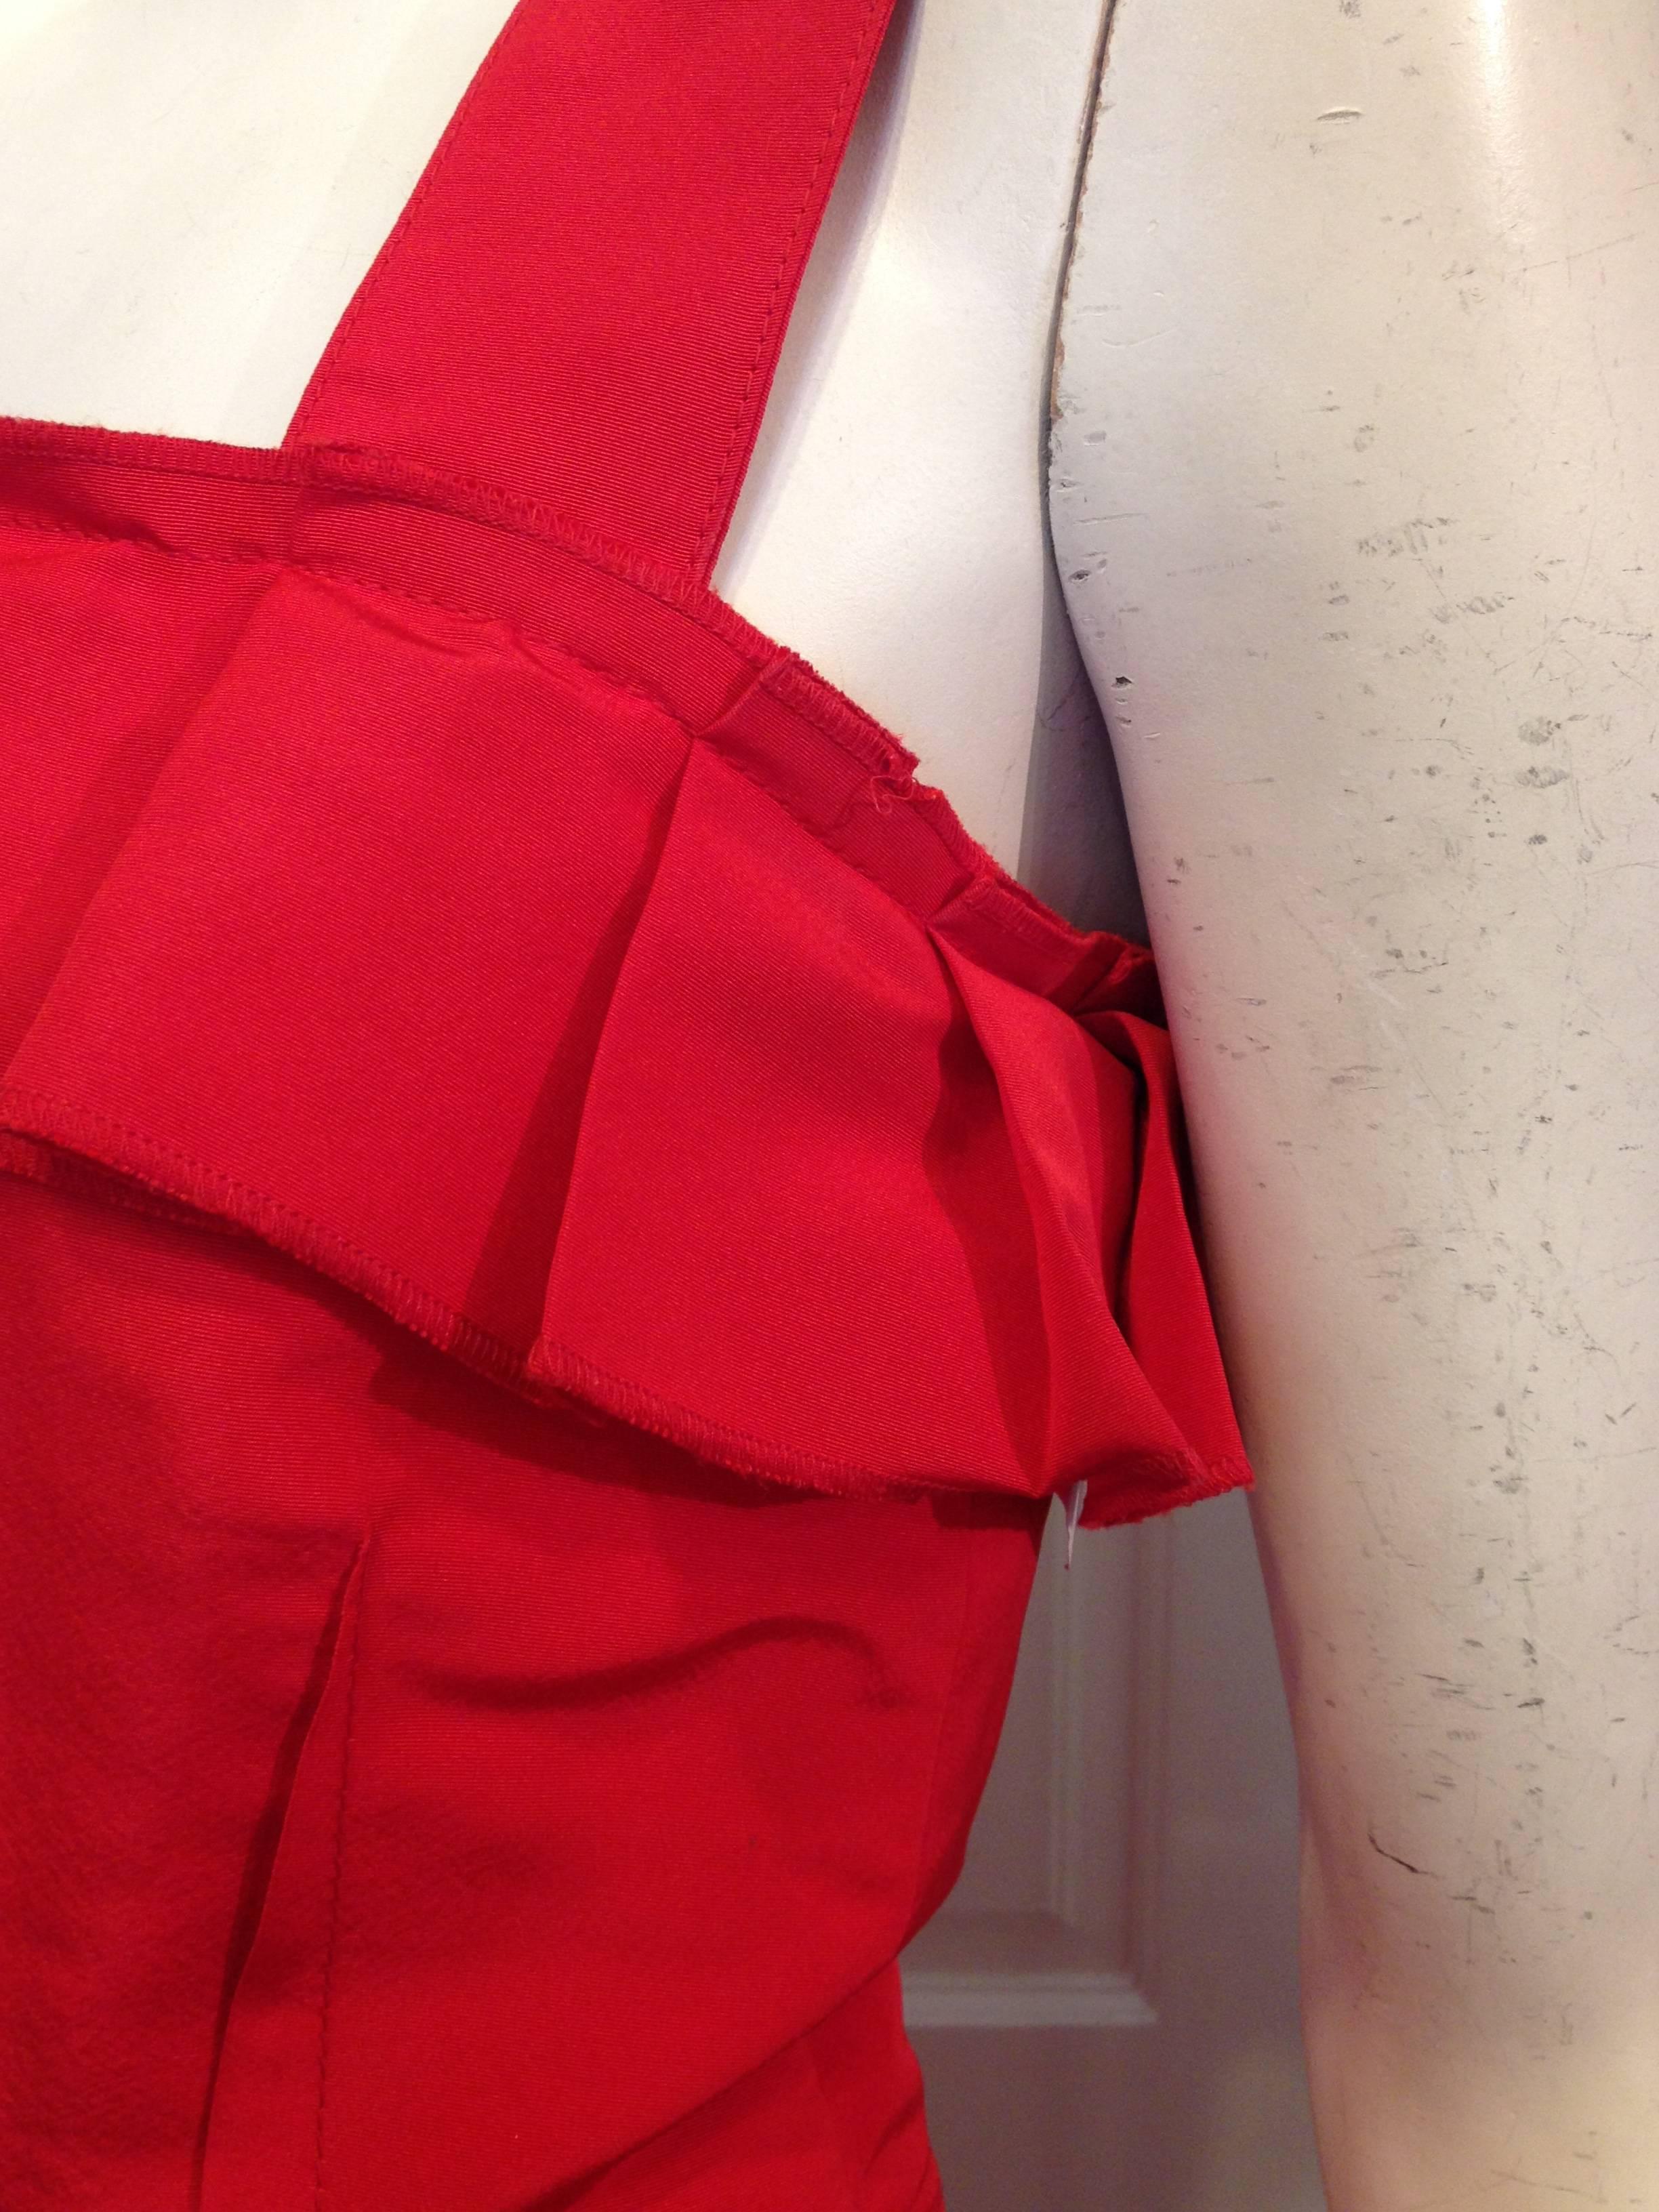 Women's Oscar de la Renta Red Silk Dress with Ruffles For Sale